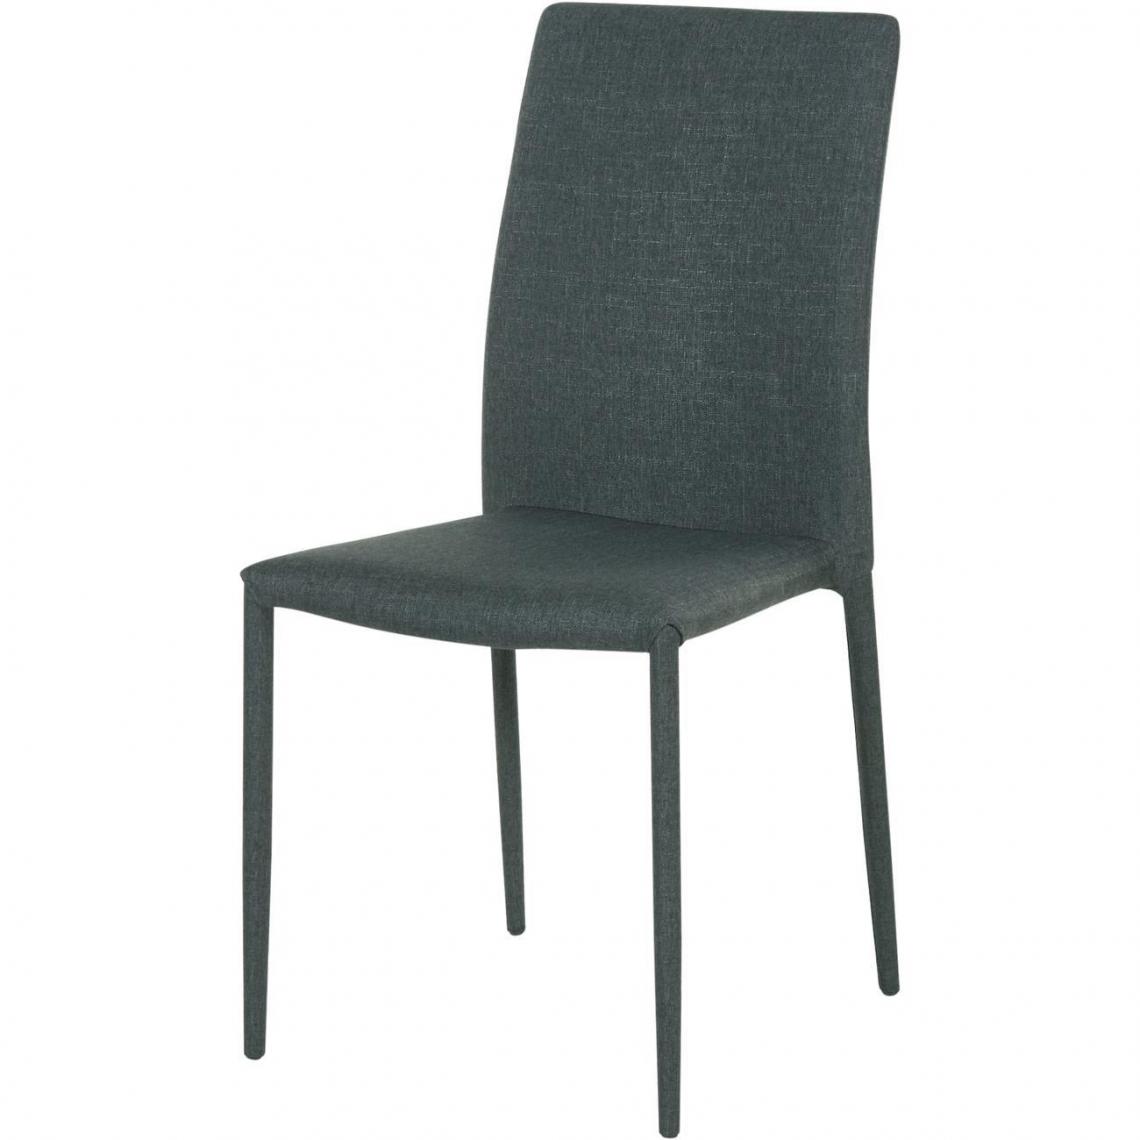 ATHM DESIGN - Lot de 4 - Chaise ISABELLA Gris - assise Tissu pieds Metal - Chaises